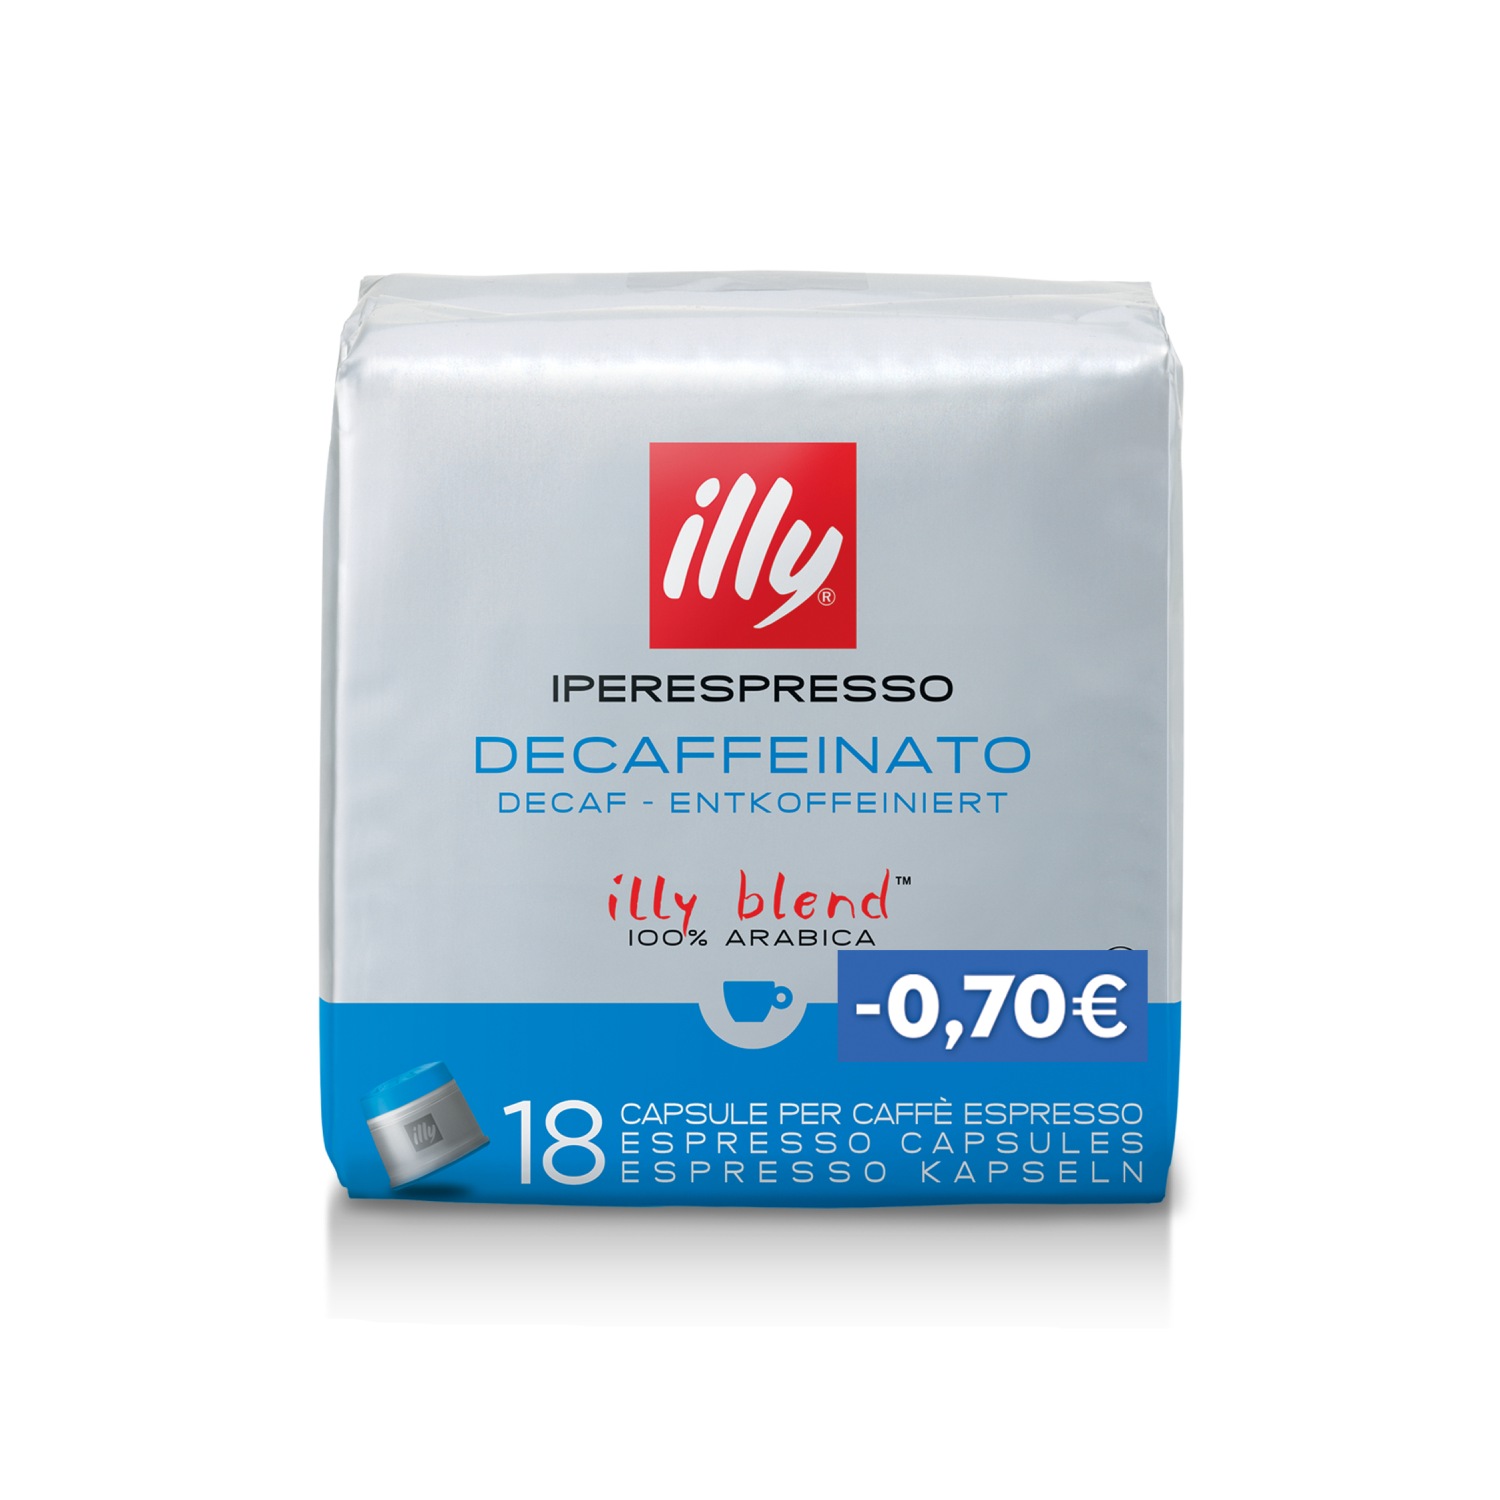 Κάψουλες Iperespresso DECAF - 18 κάψουλες (-0,70€), Χαρμάνια, 01-04-2203